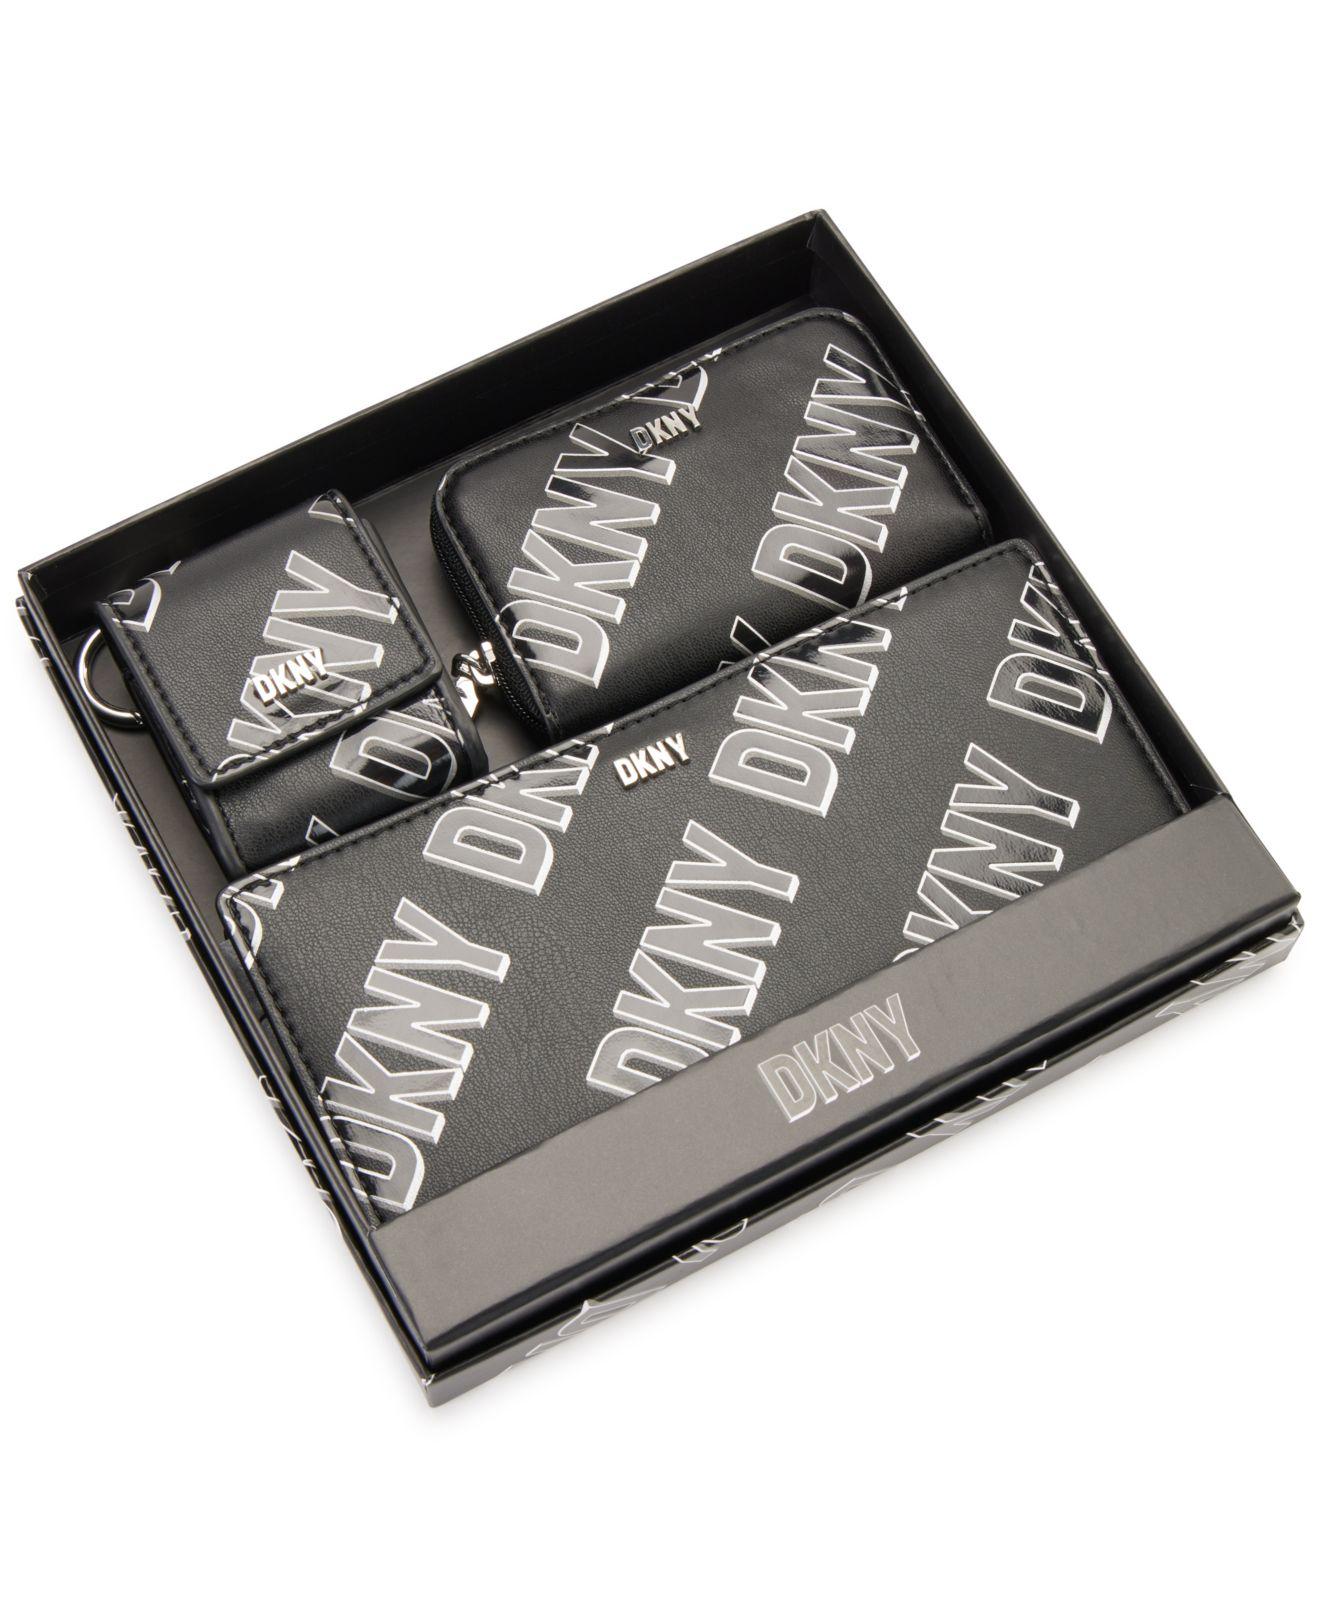 DKNY Phoenix 3 In 1 Wallet Gift Box Set in Black | Lyst